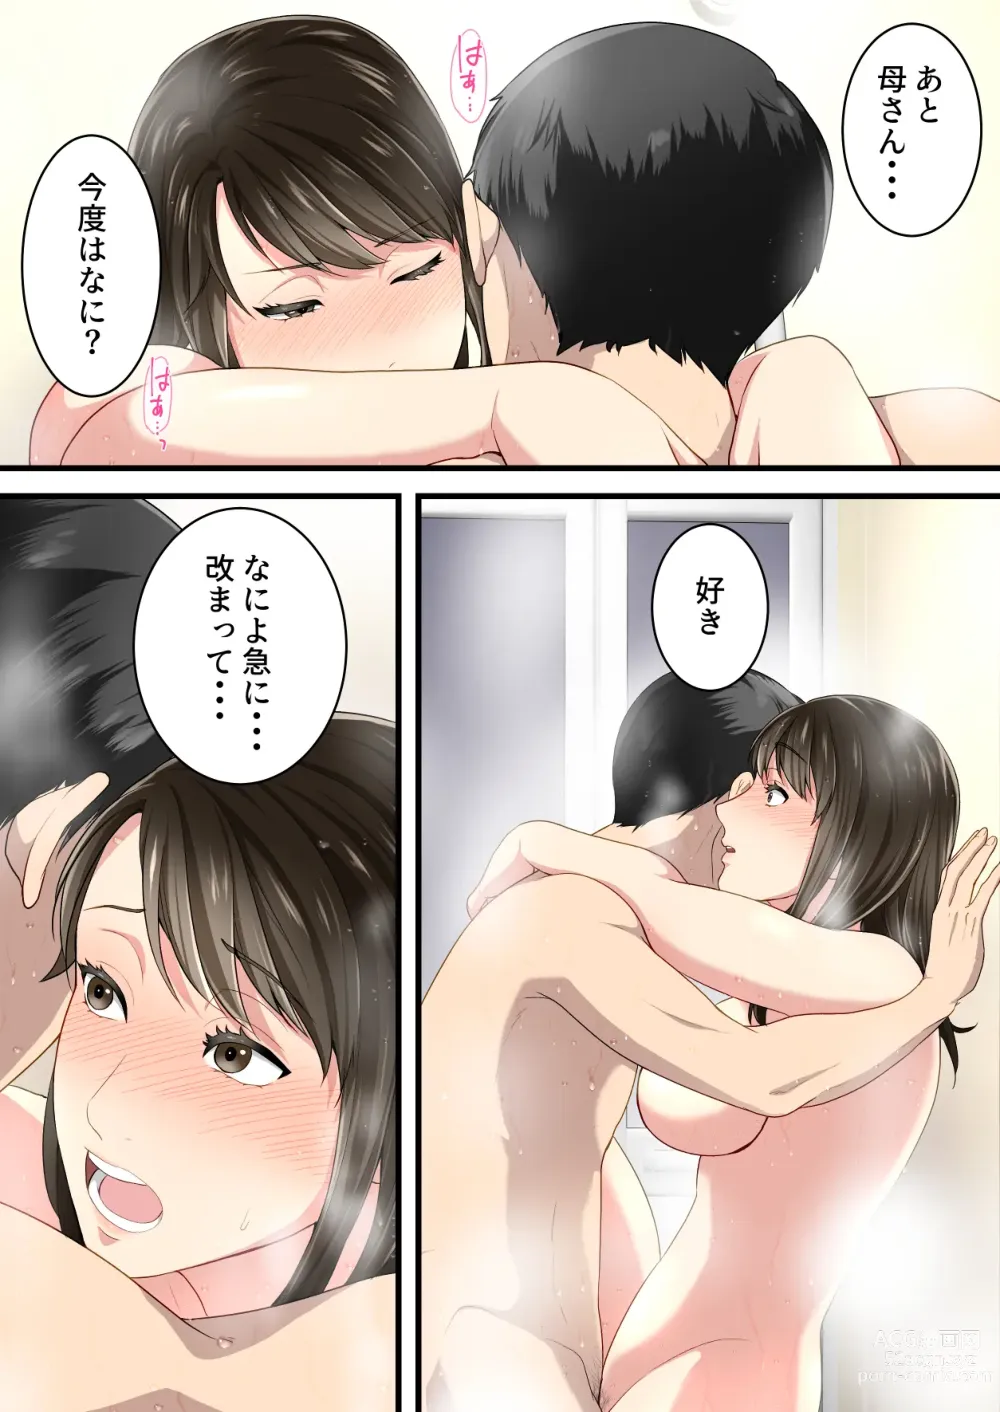 Page 61 of doujinshi Naka no Warukatta Haha to Musuko ga Amaama Couple ni Naru made